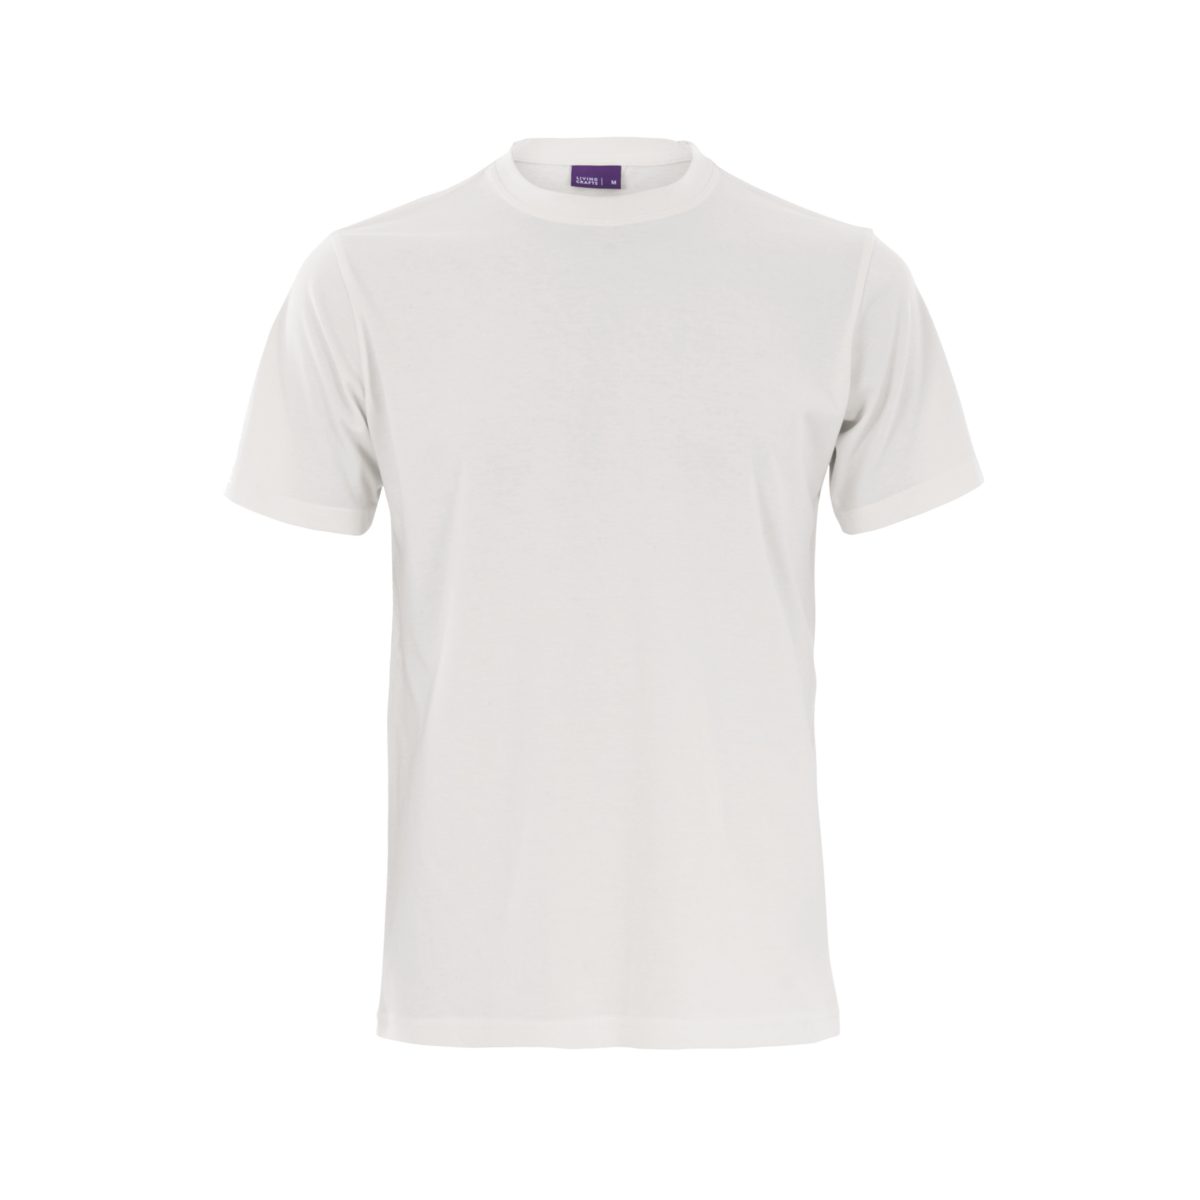 LIVING CRAFTS T-Shirt CLARK Weiches, anschmiegsames Single White Jersey